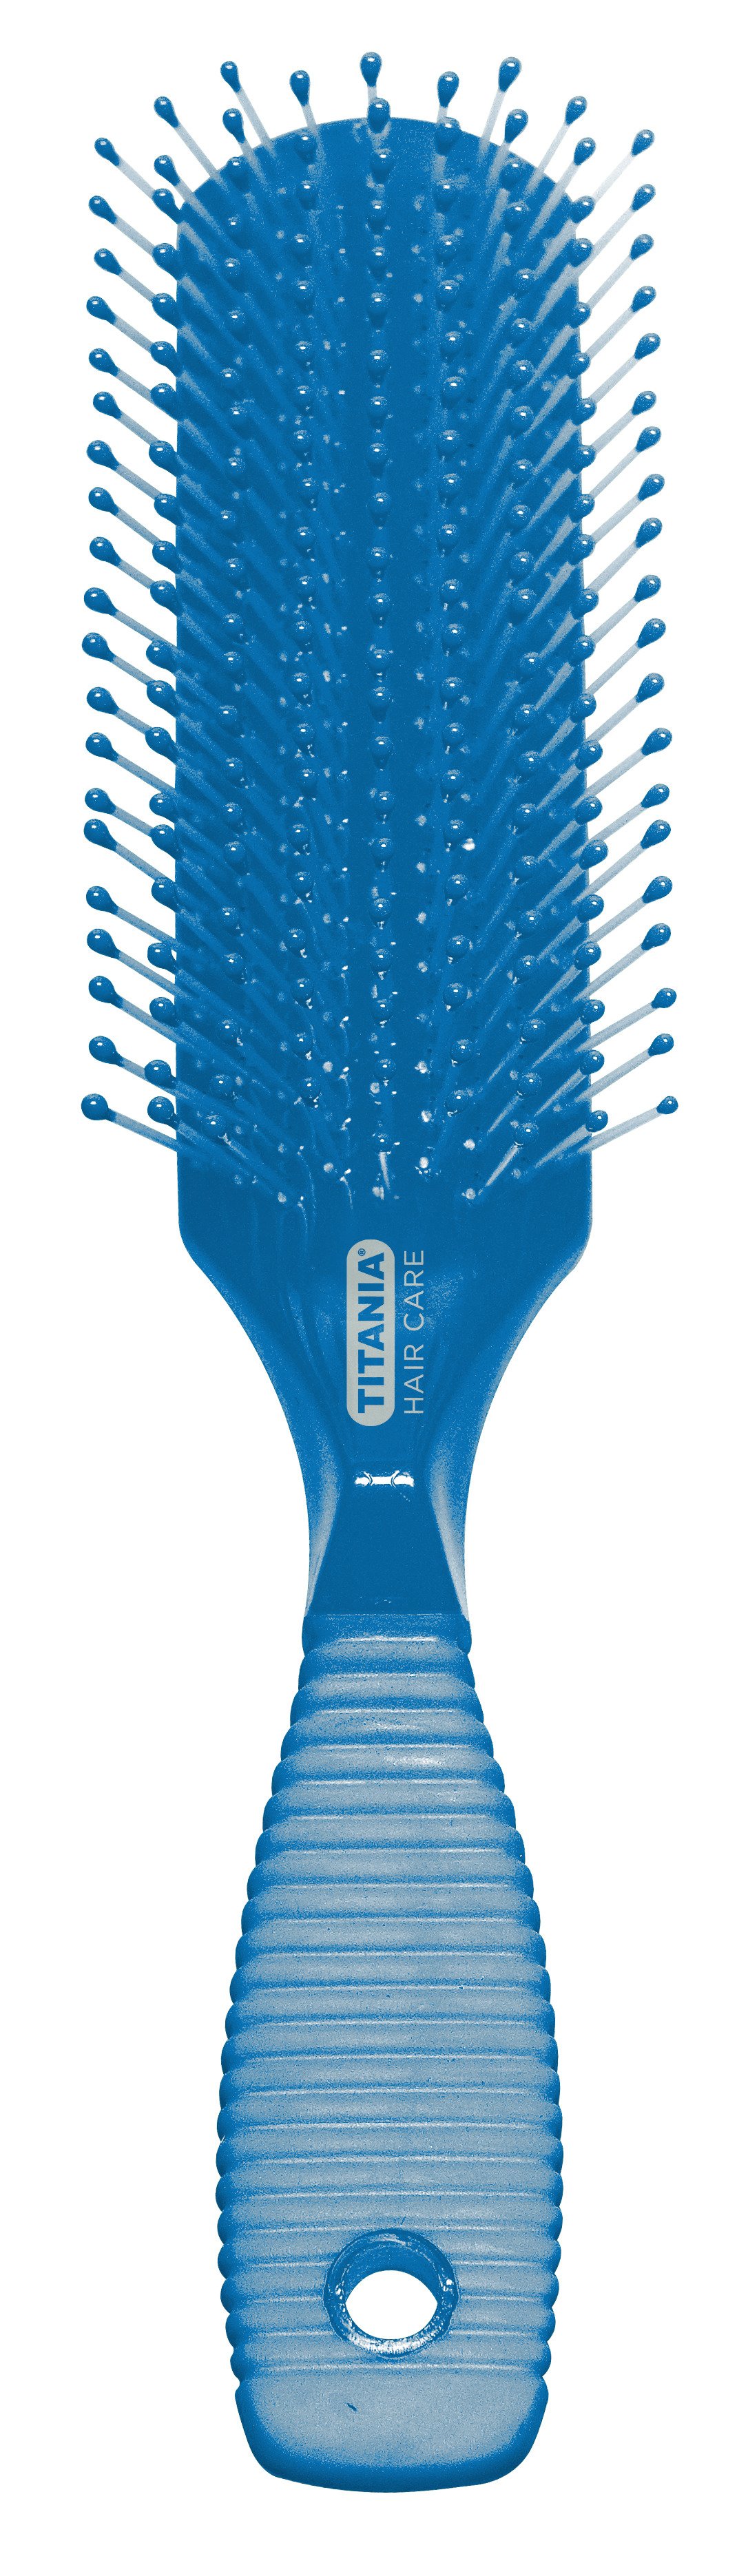 Щетка для волос Titania массажная, 9 рядов, синий (1829 син) - фото 1